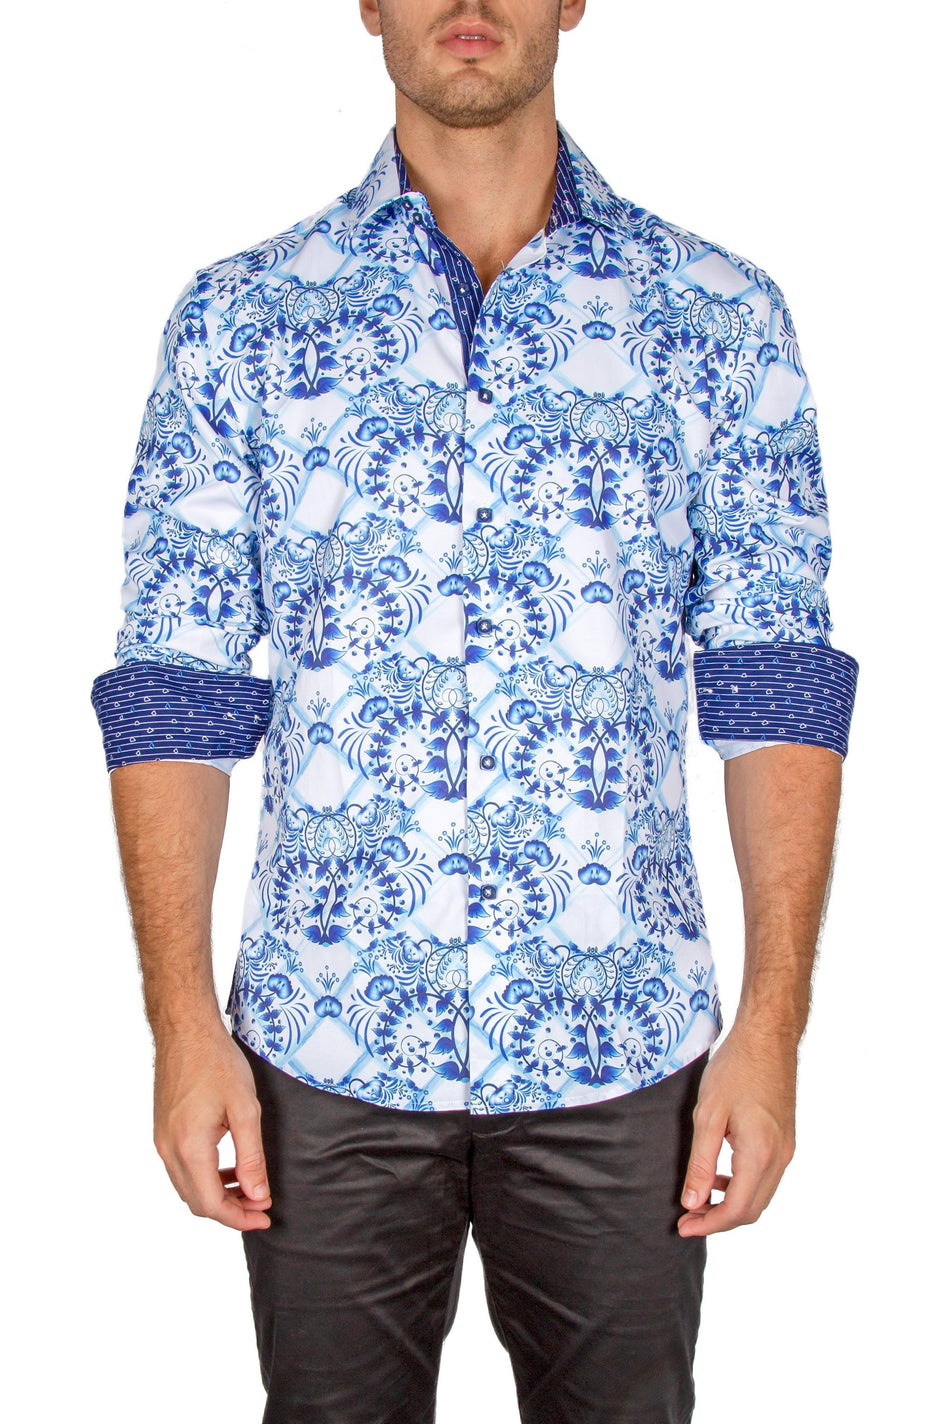 182231-mens-light-blue-button-up-long-sleeve-dress-shirt